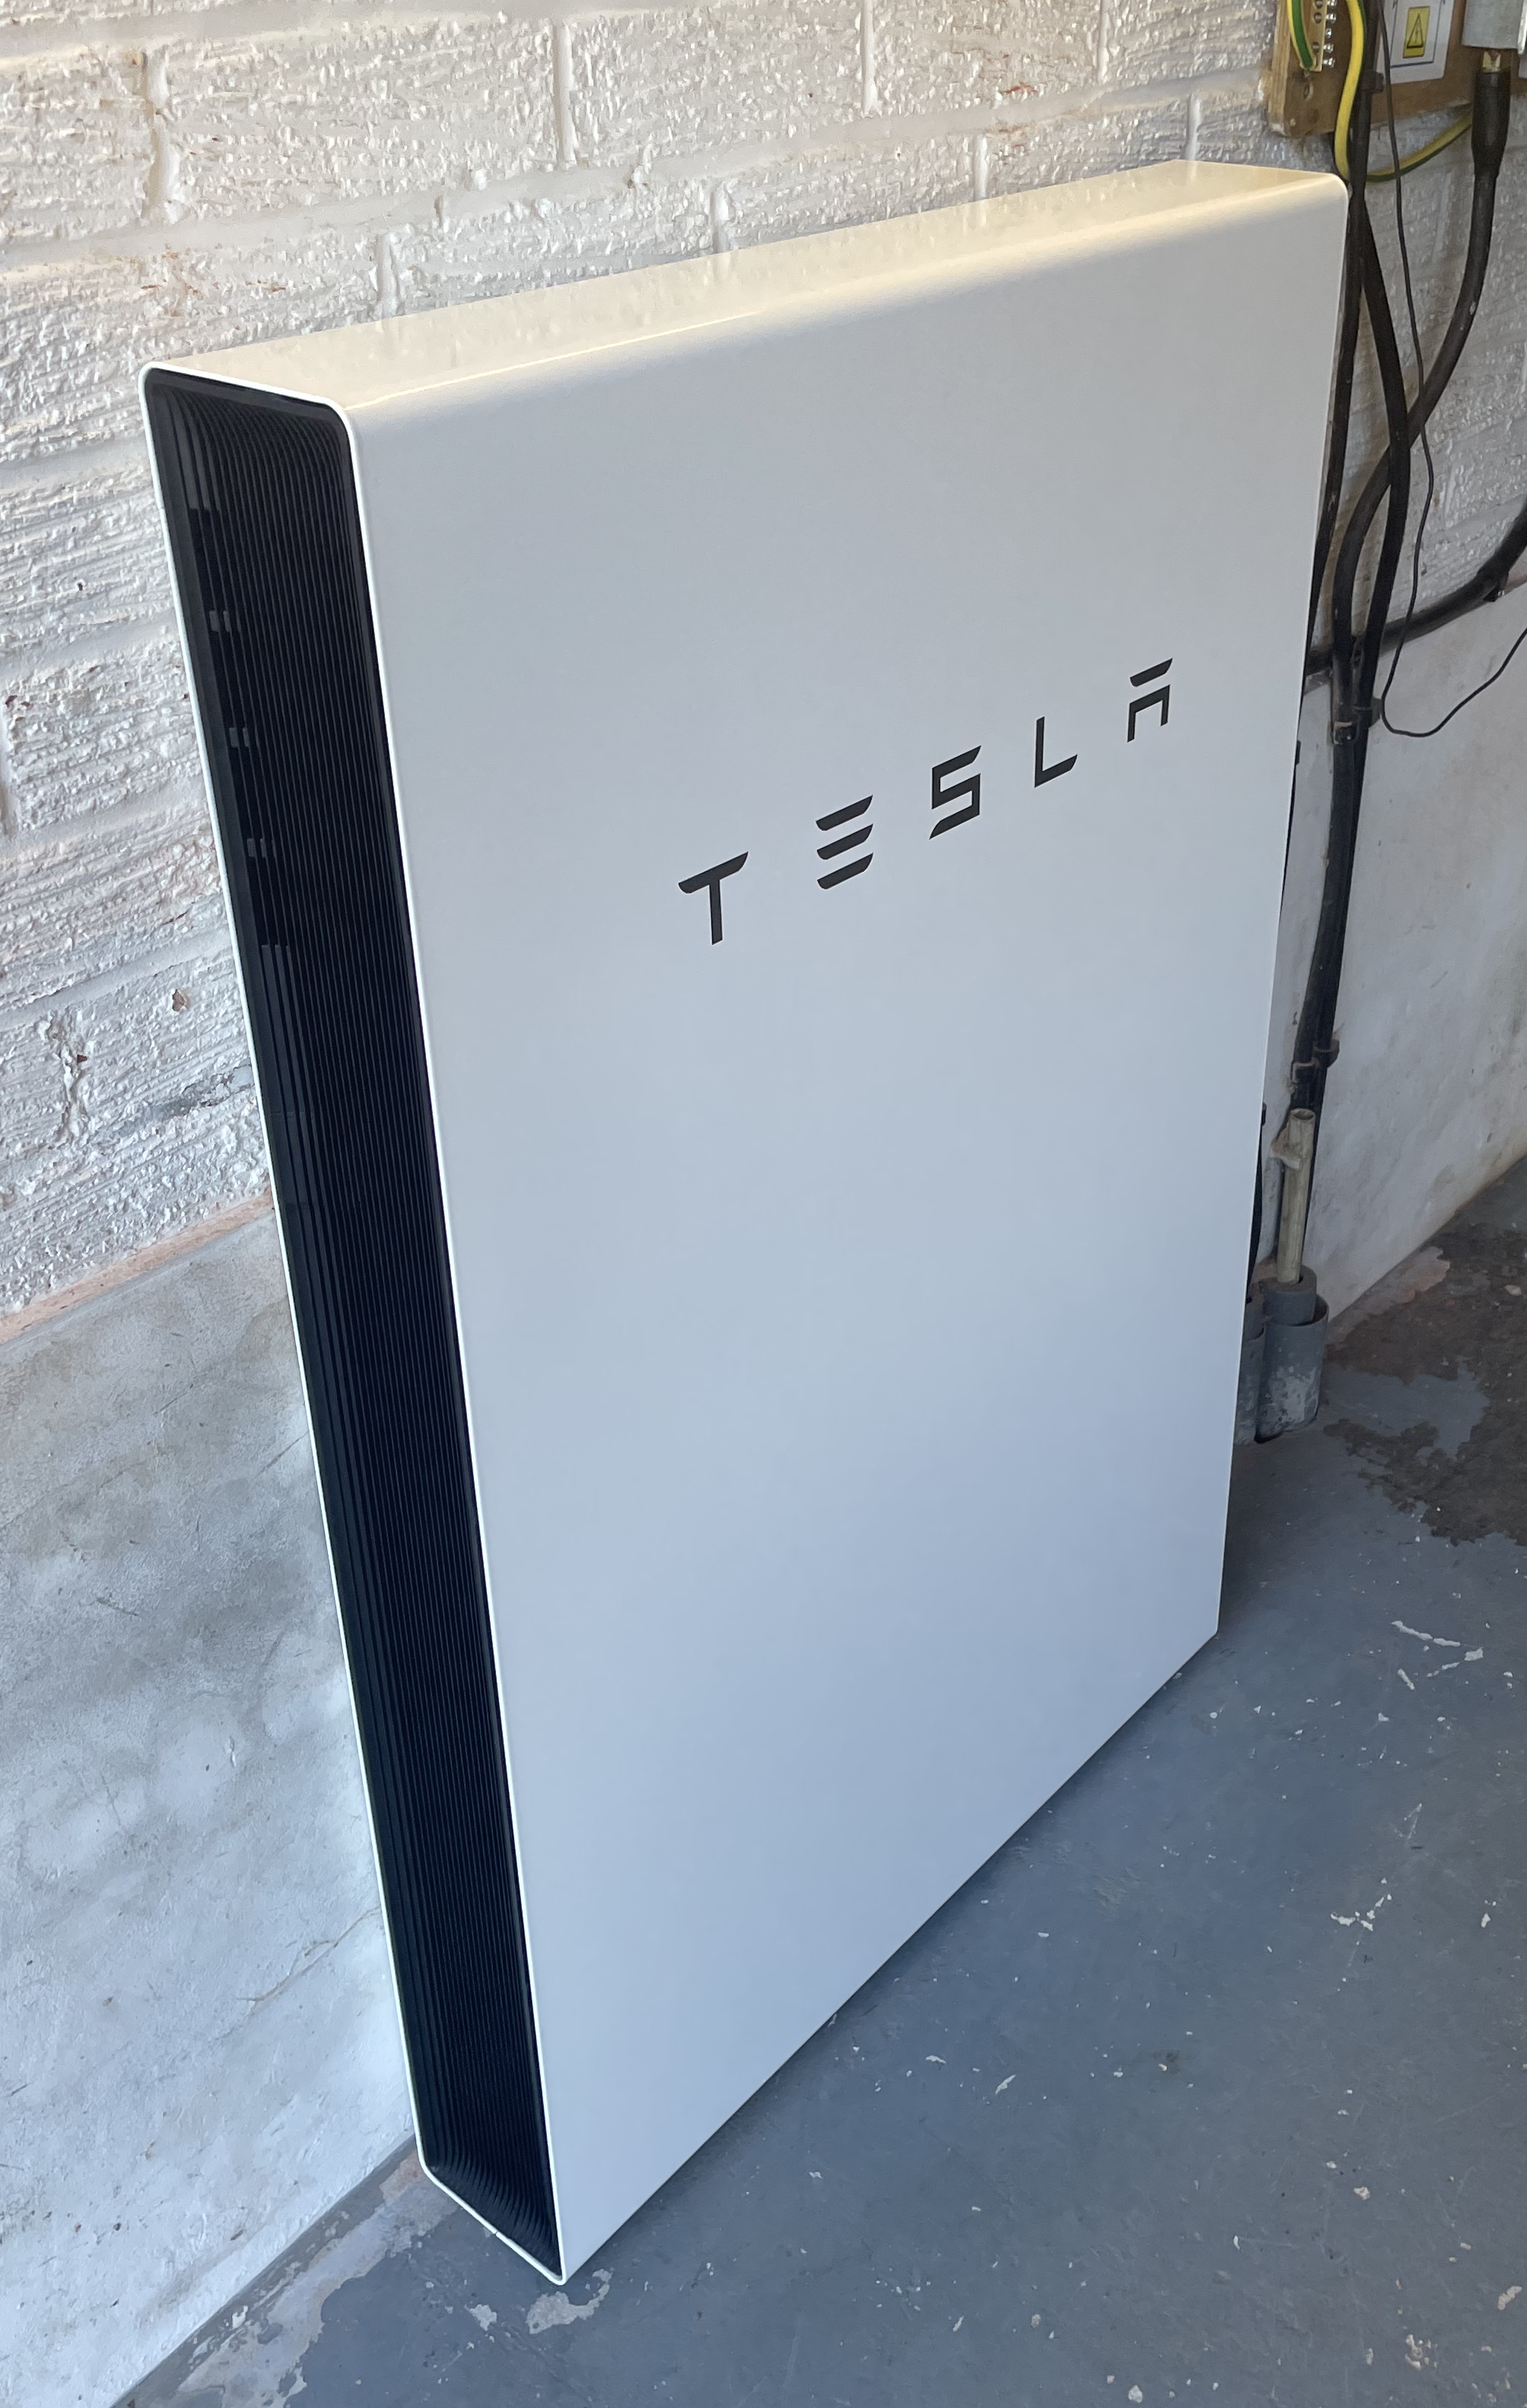 Tesla Installed